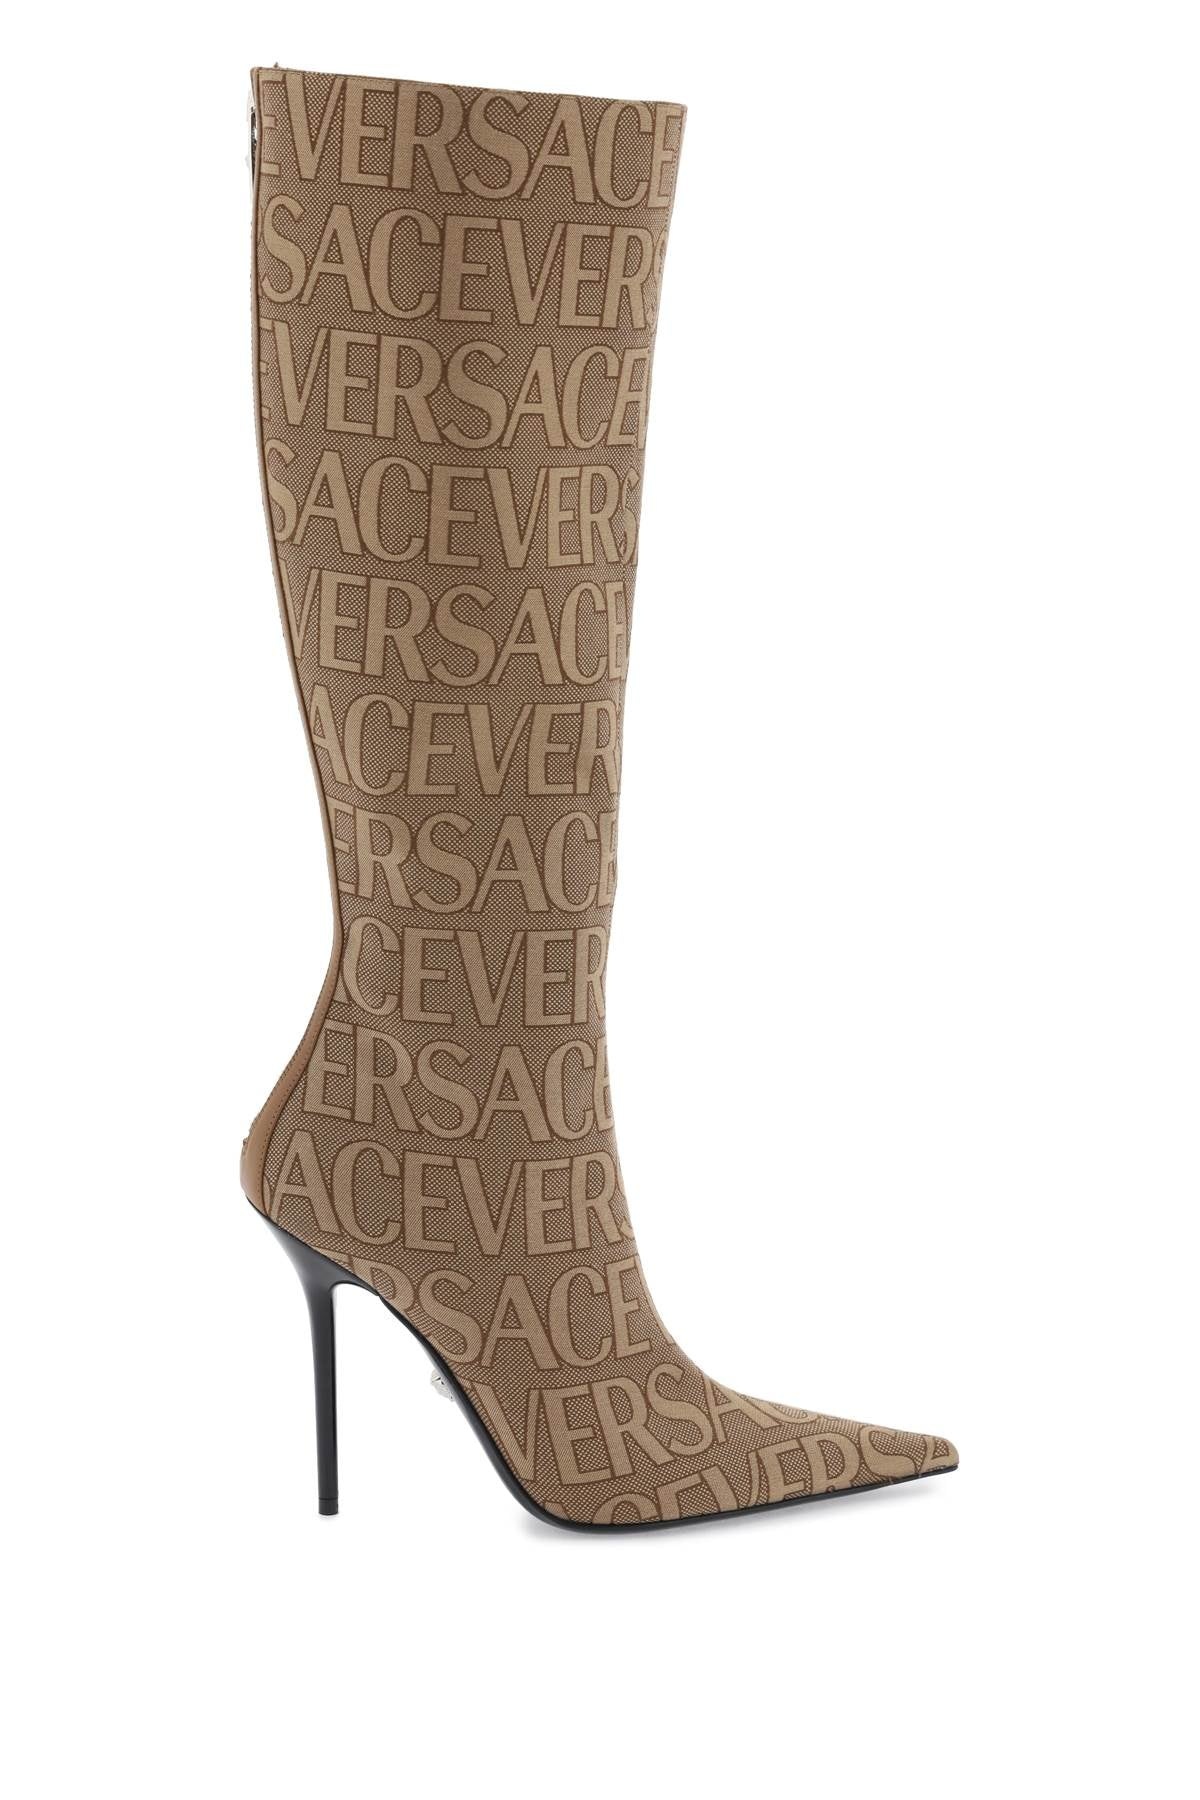 Versace 'Versace Allover' Boots Women - 1